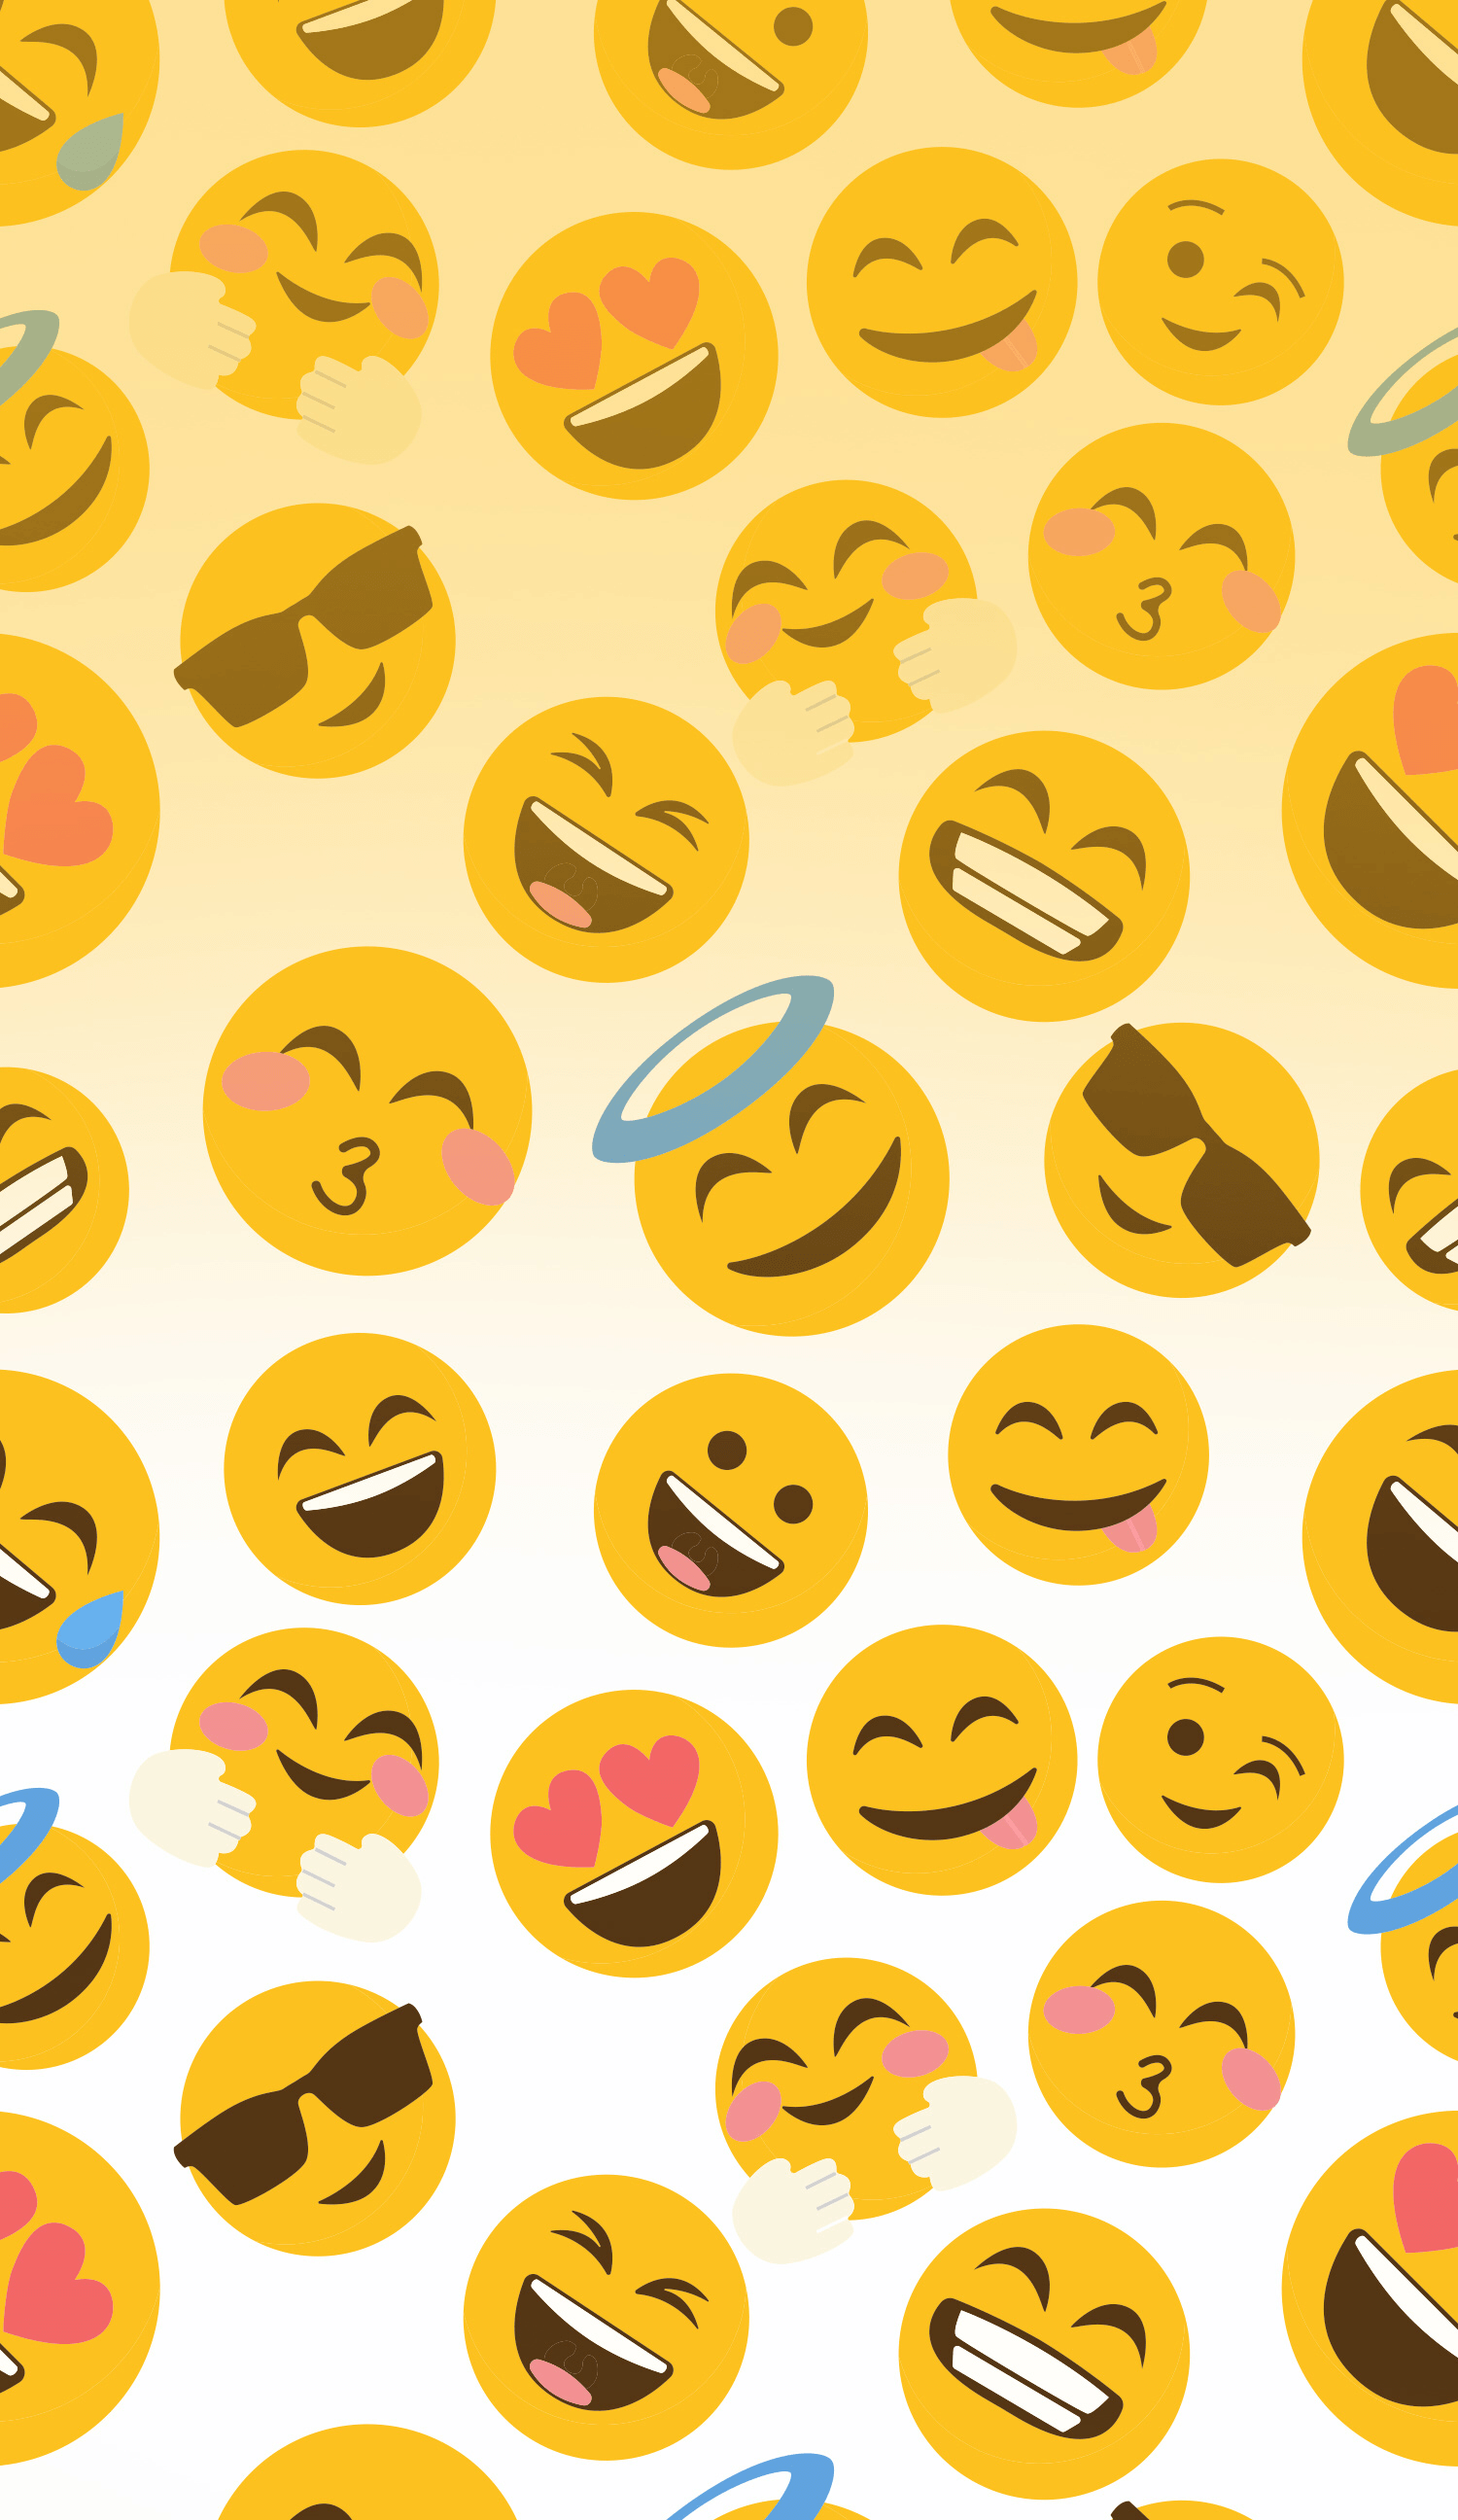 Sad Emoji Wallpapers - Wallpaper Cave